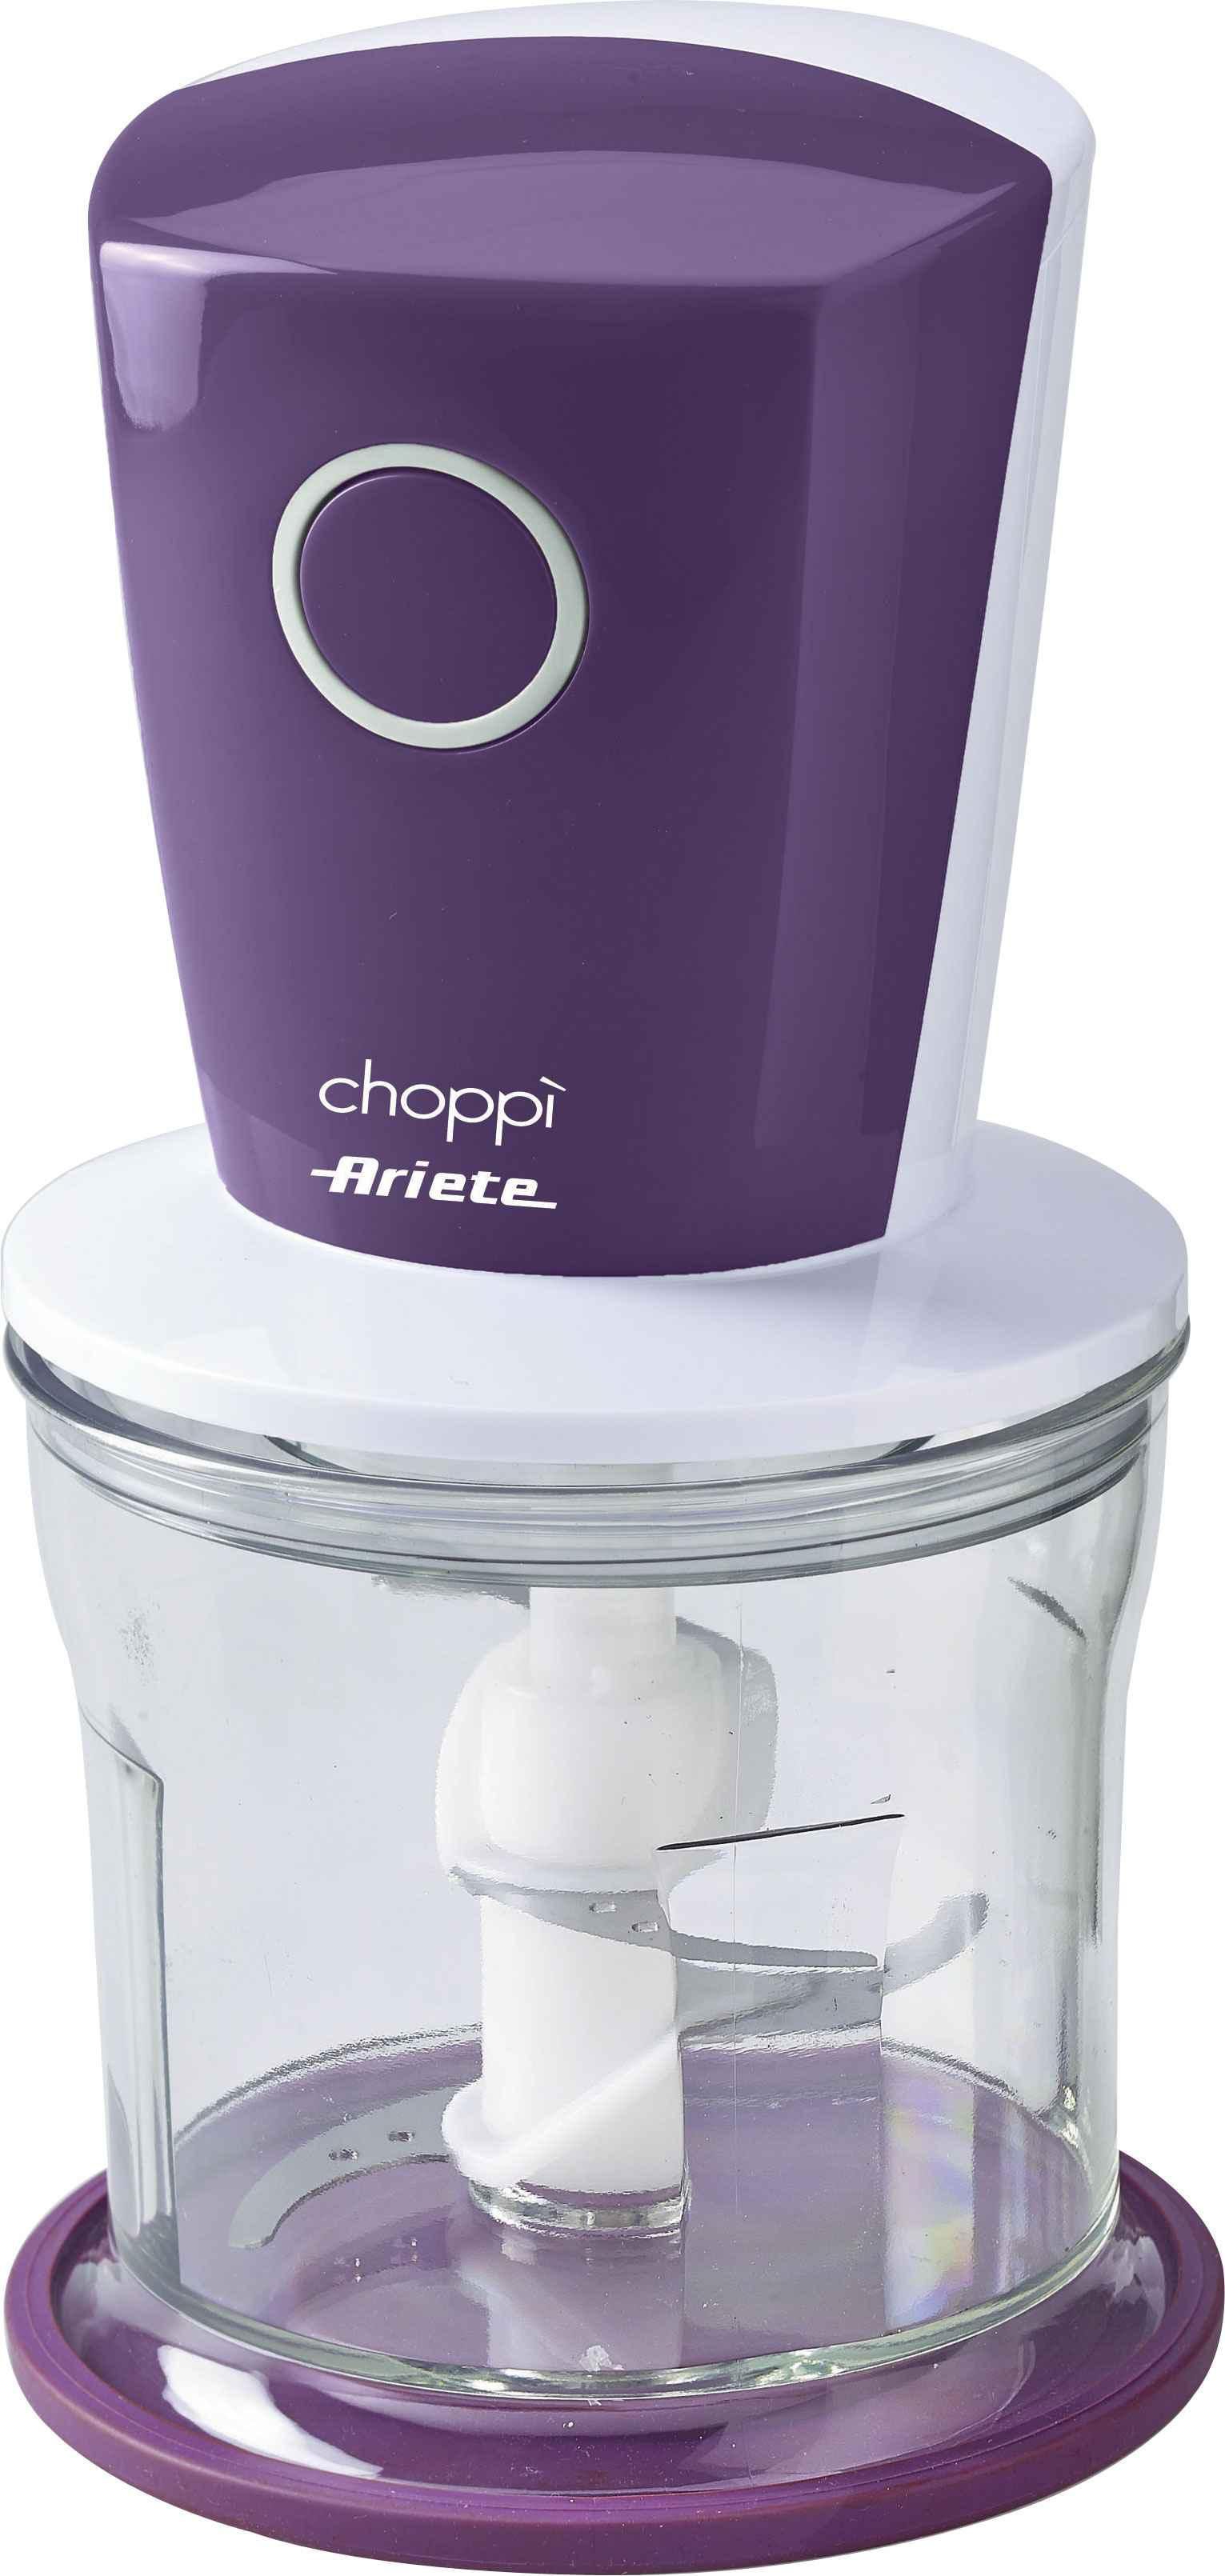 Ariete Choppì Purple - Chopper with Garlic Peeler Attachment